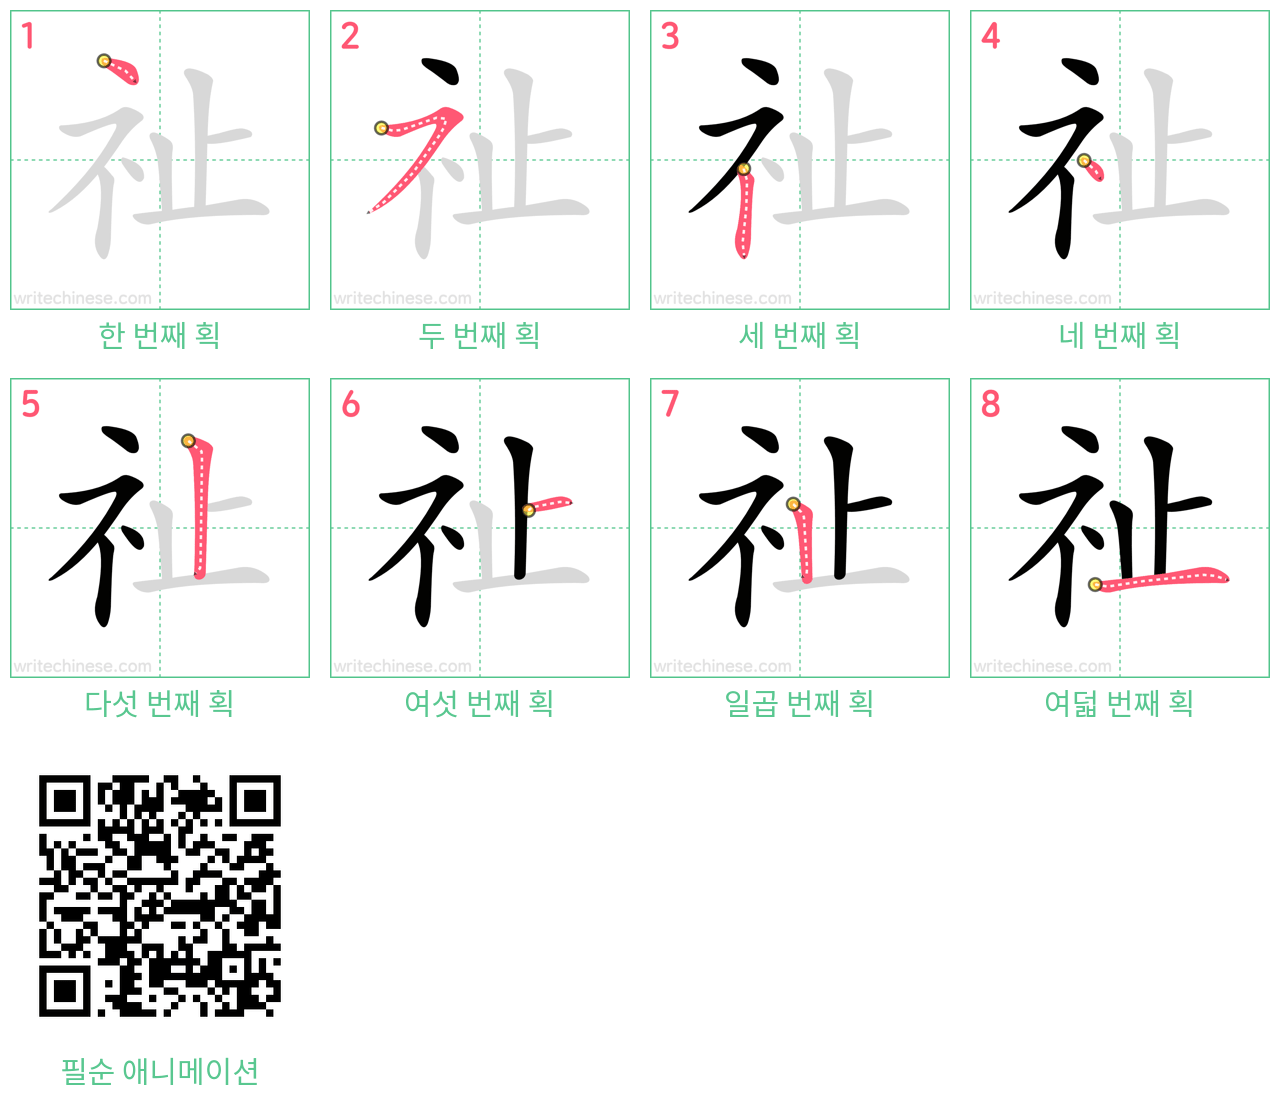 祉 step-by-step stroke order diagrams